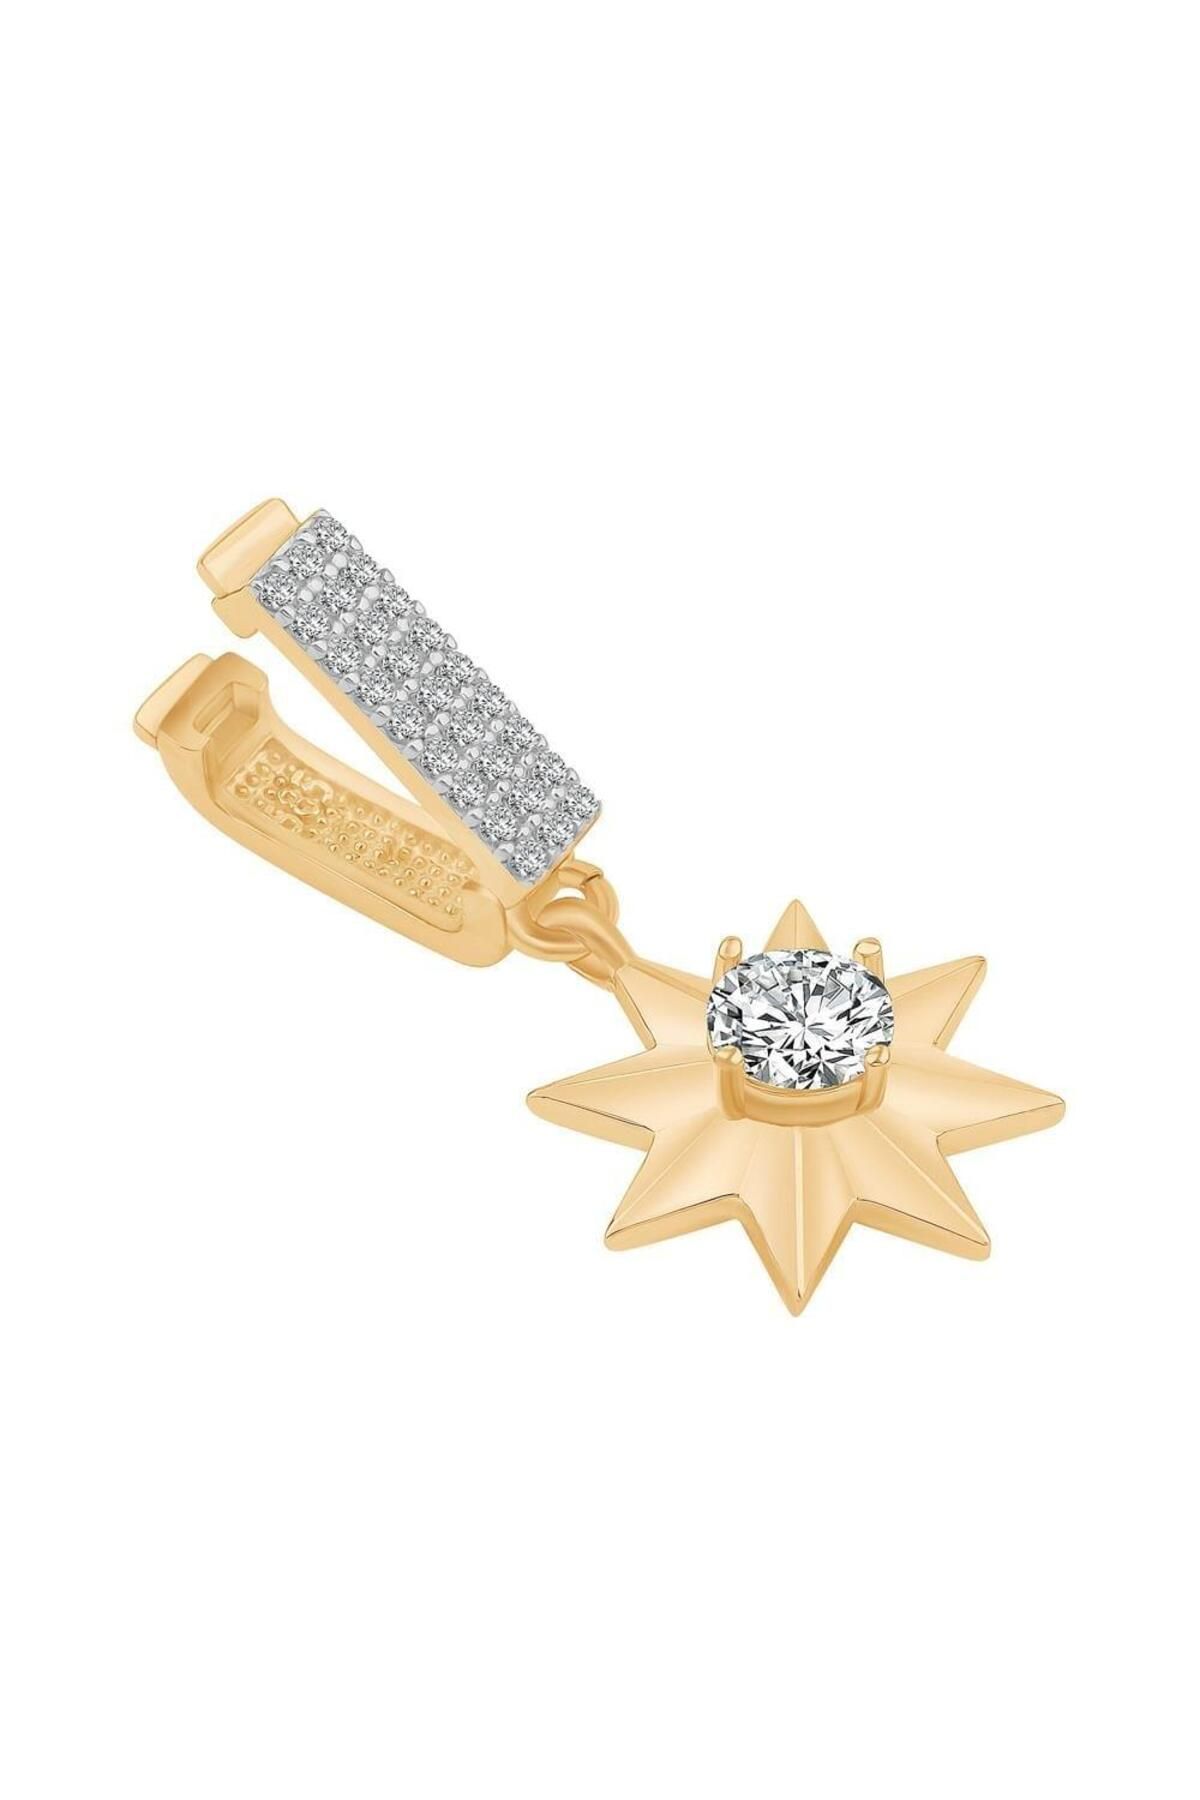 Ema Jewellery Altın Çiçek Sallantılı 9mm Bileklik Charm